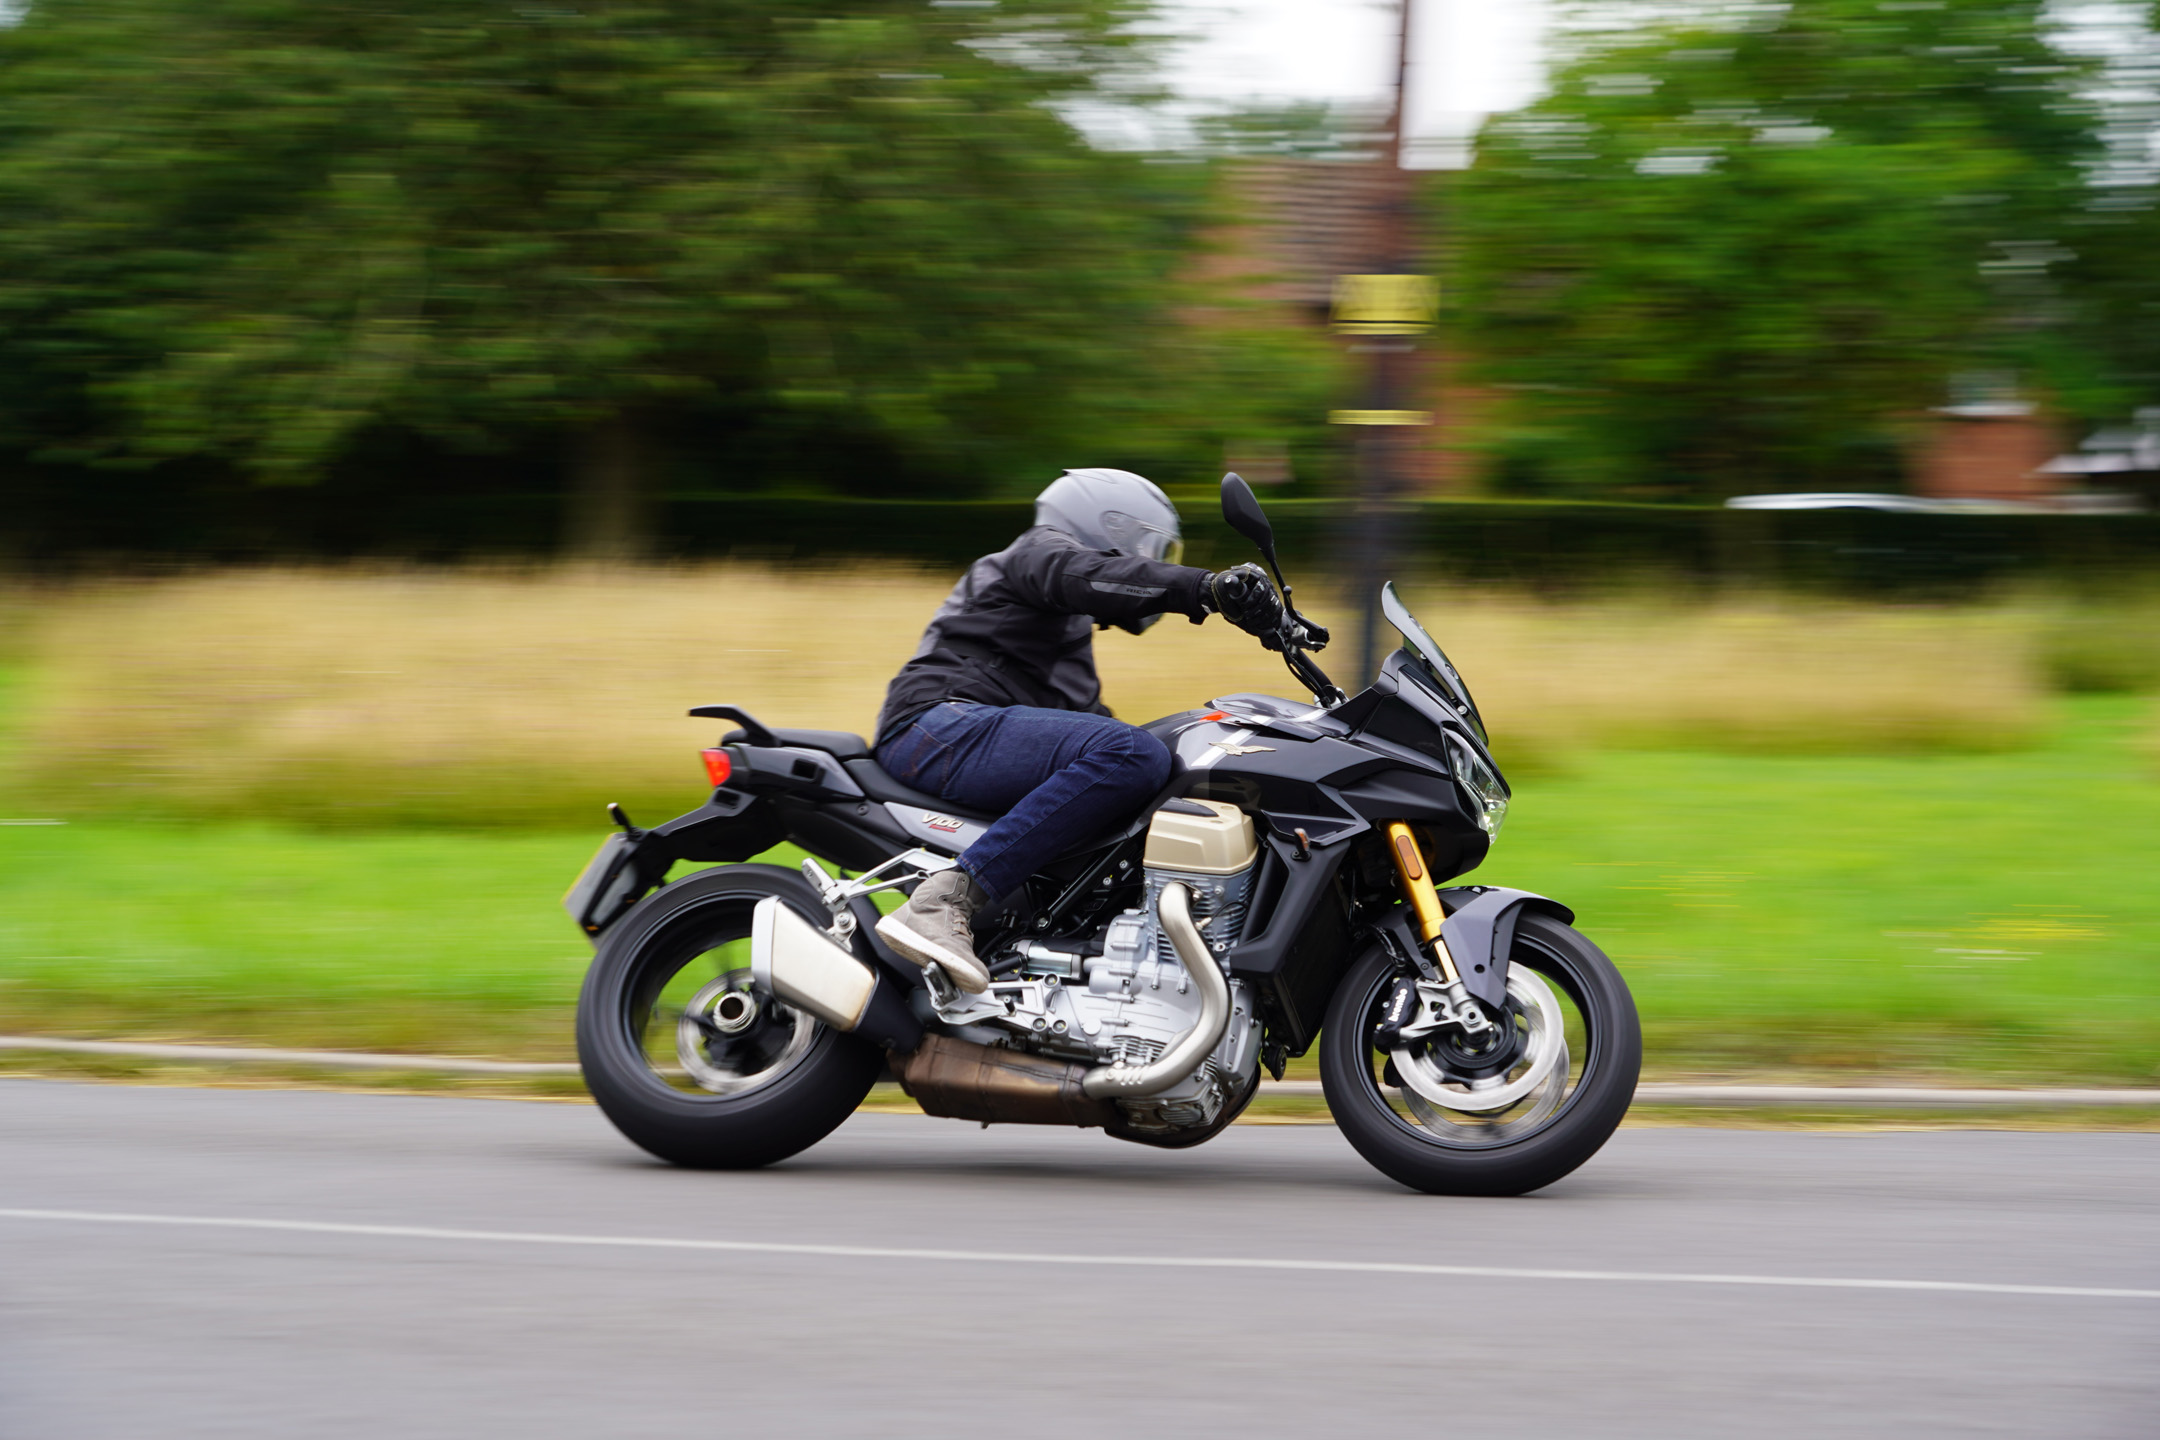 Corner action shot of the Moto Guzzi V100 Mandello S